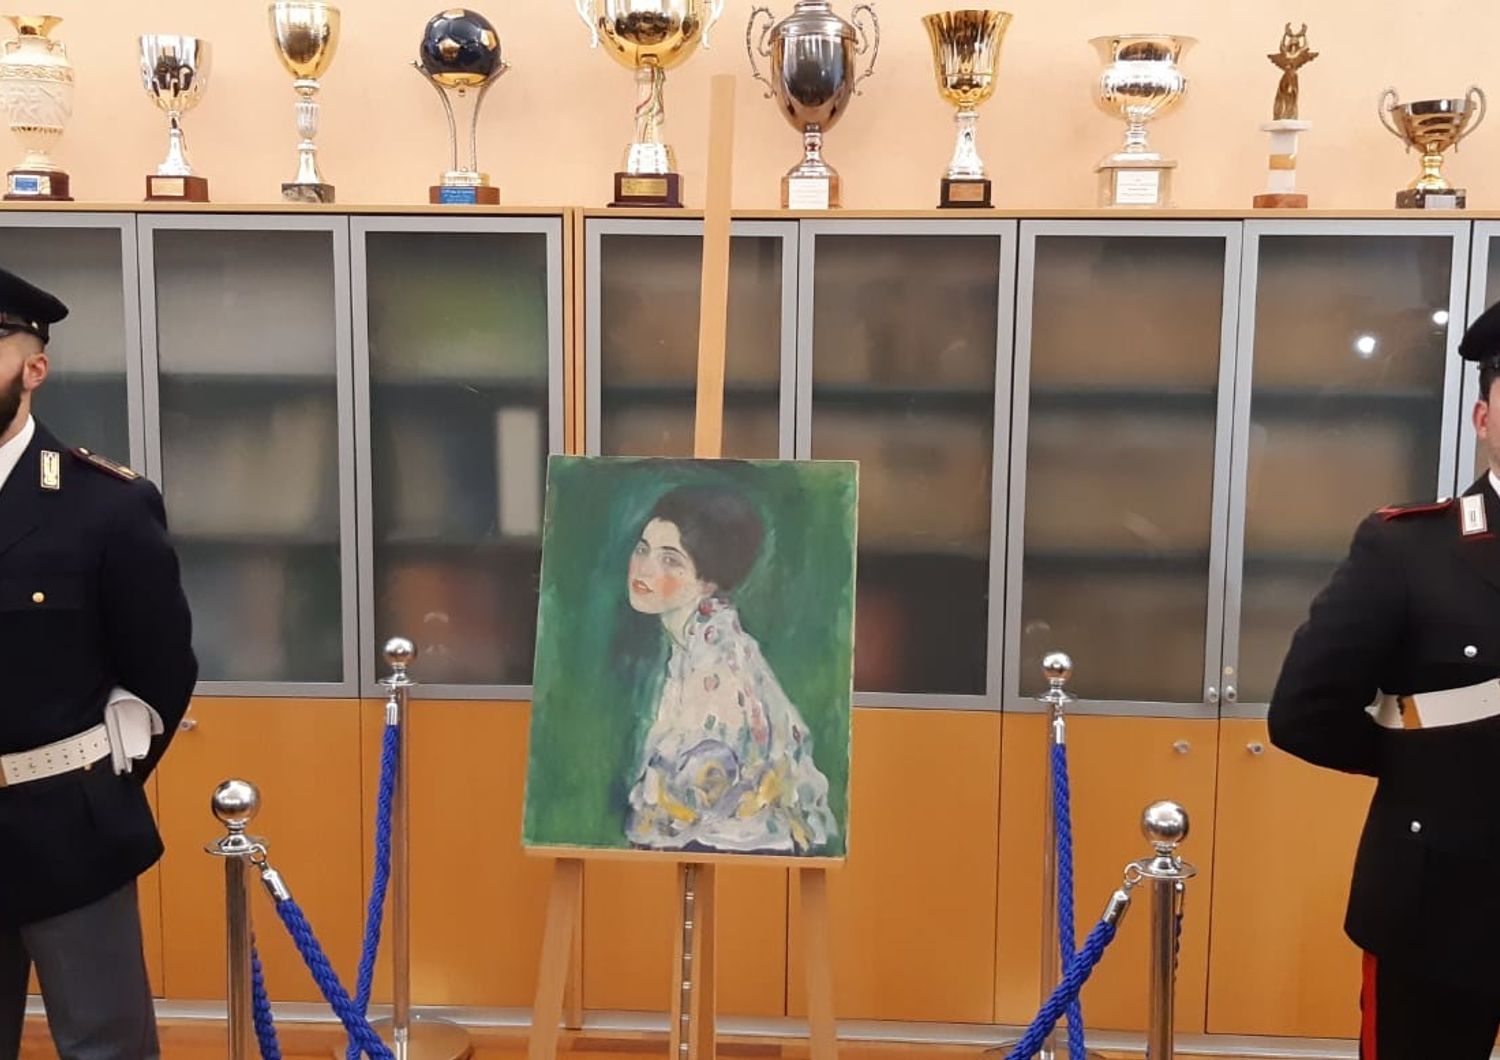 Il quadro di Klimt ritrovato a Piacenza